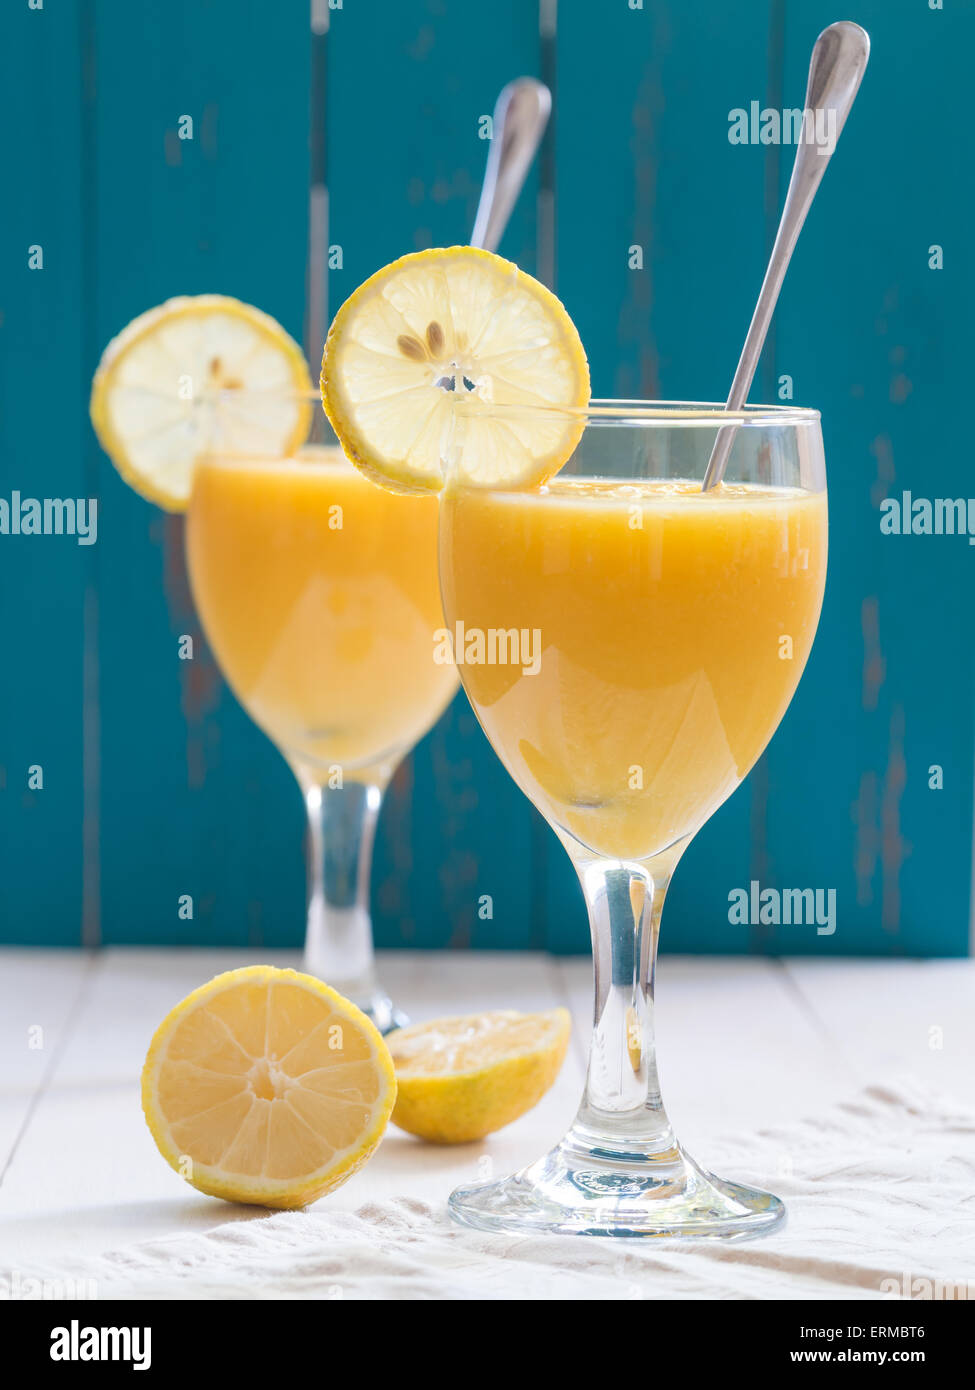 Deux verres de vin jaune frais smoothie aux fruits tropicaux à la mangue et ananas placé sur un tableau blanc. Fond bleu turquoise Banque D'Images